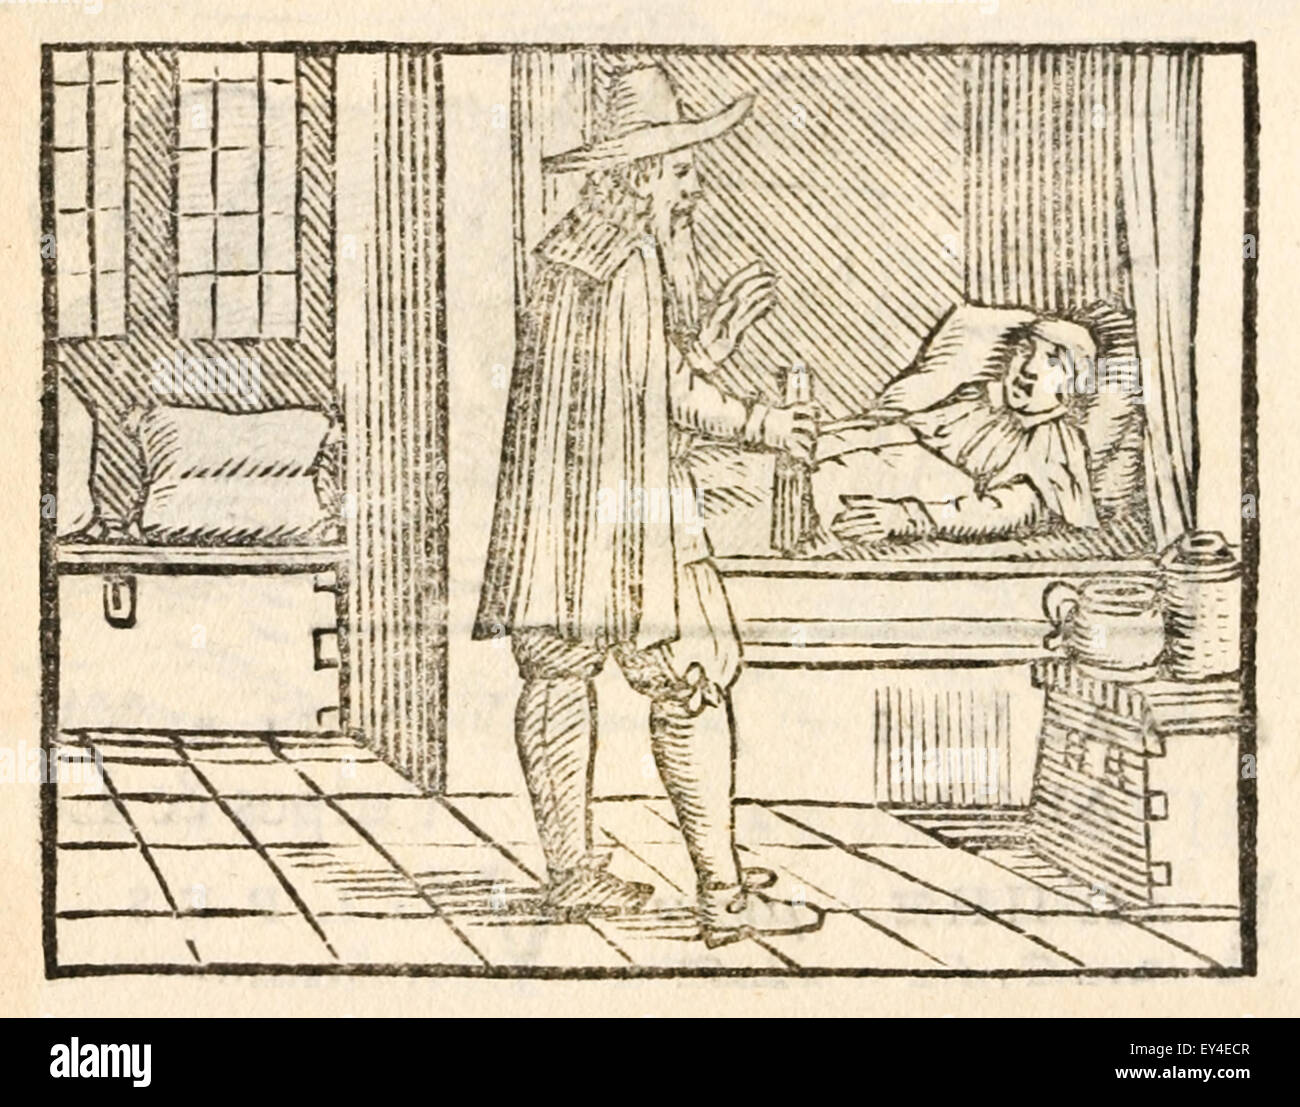 "La vieille femme et le médecin' fable d'Ésope (vers 600 avant JC). 17e siècle gravure sur bois illustrant les Fables d'Ésope. Voir la description pour plus d'informations. Banque D'Images